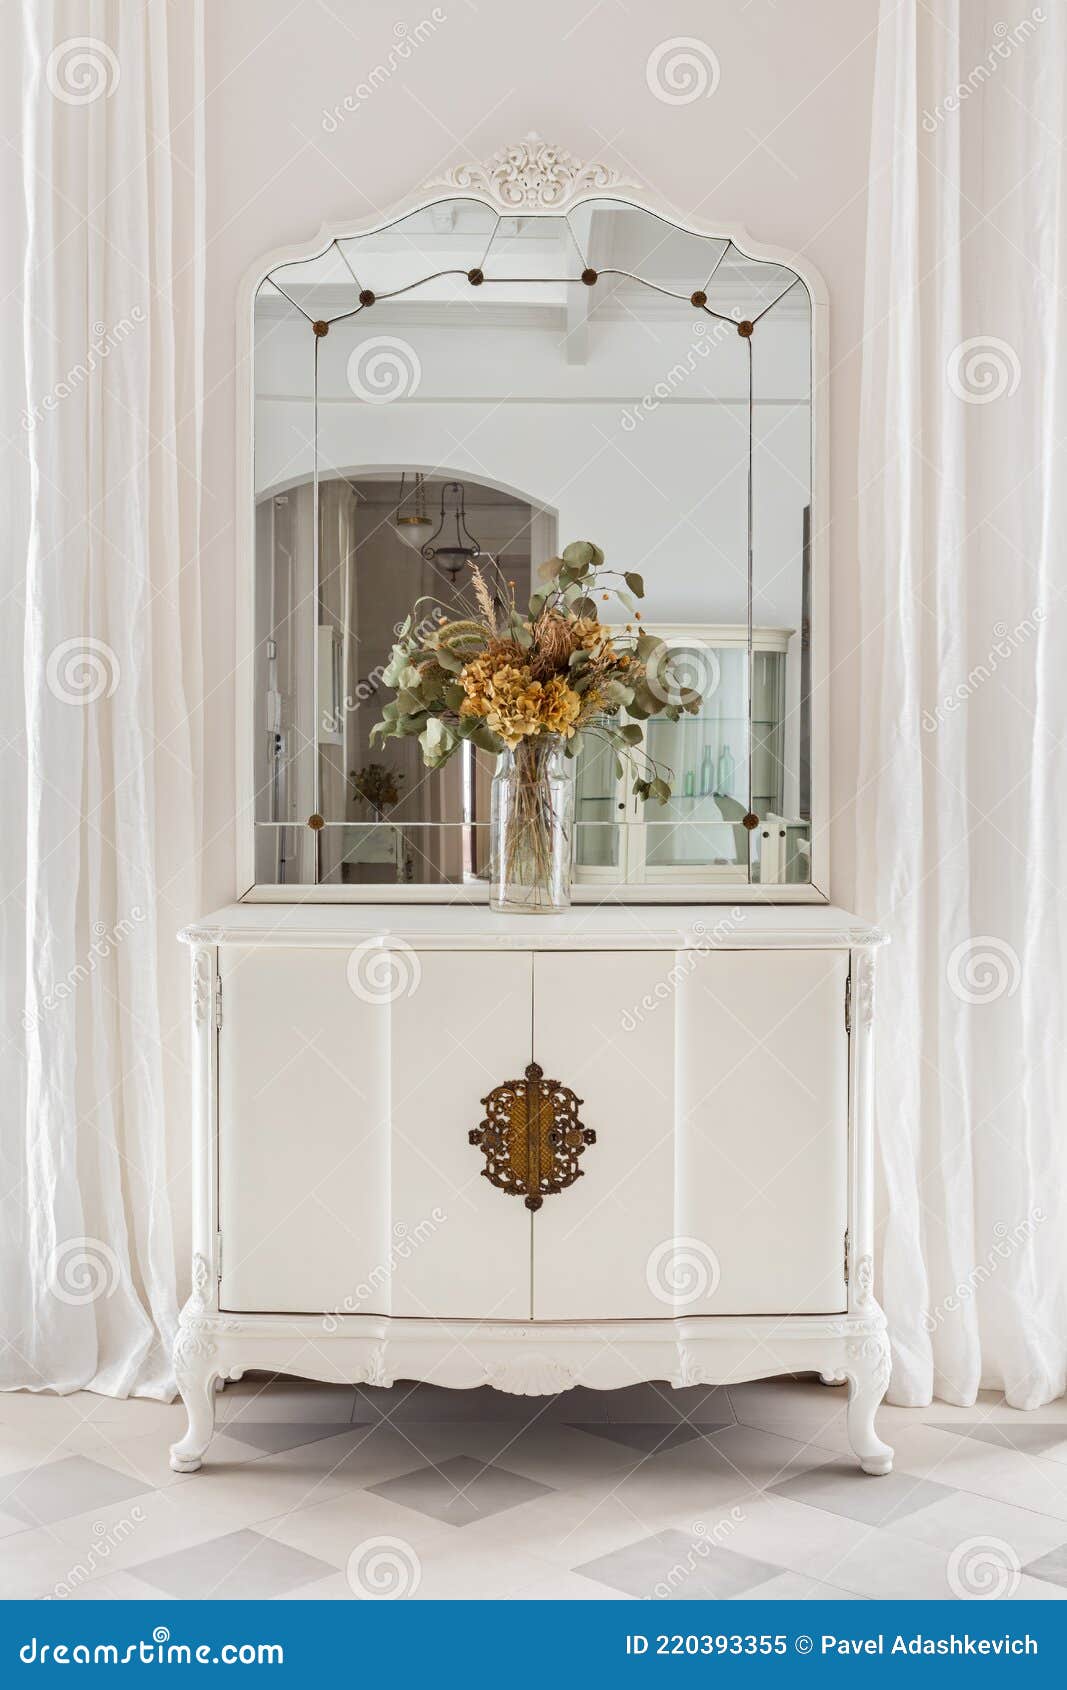 Armario con espejo - El mueble clásico italiano